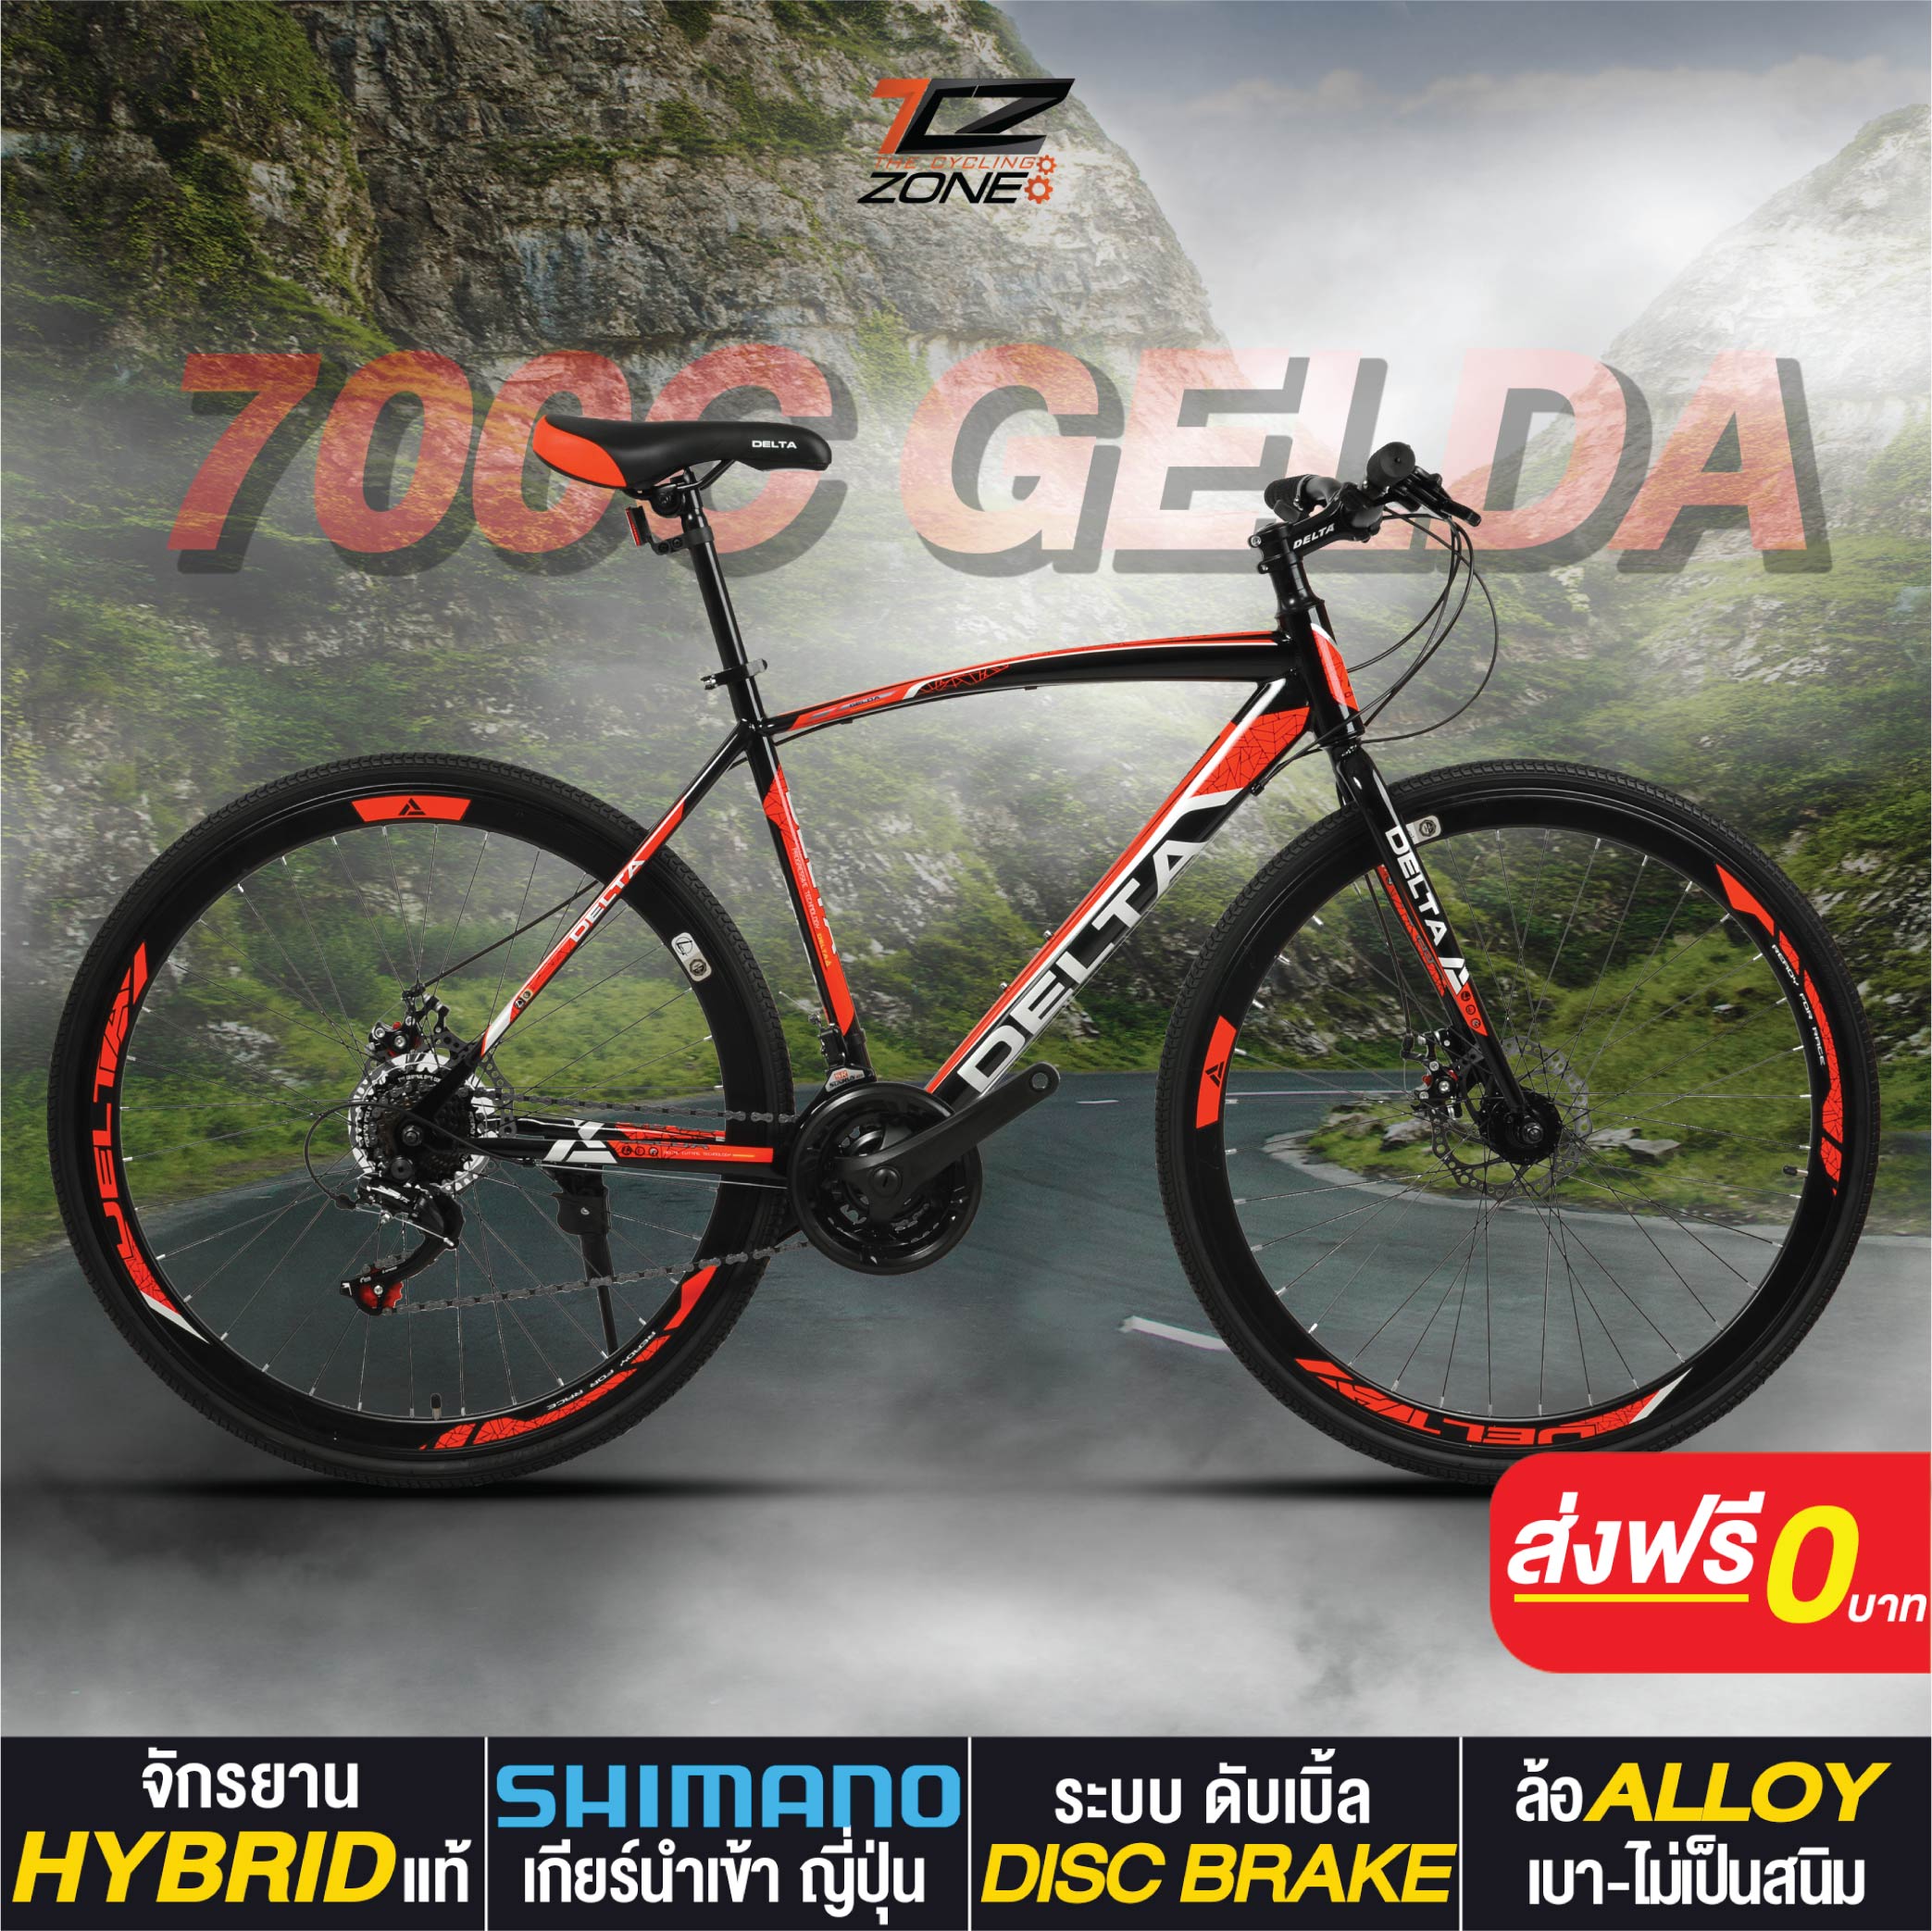 จักรยานไฮบริด 700C / DELTA เกียร์ SHIMANO 21 สปีด / ไซส์ 49 / รุ่น GELDA สีแดง